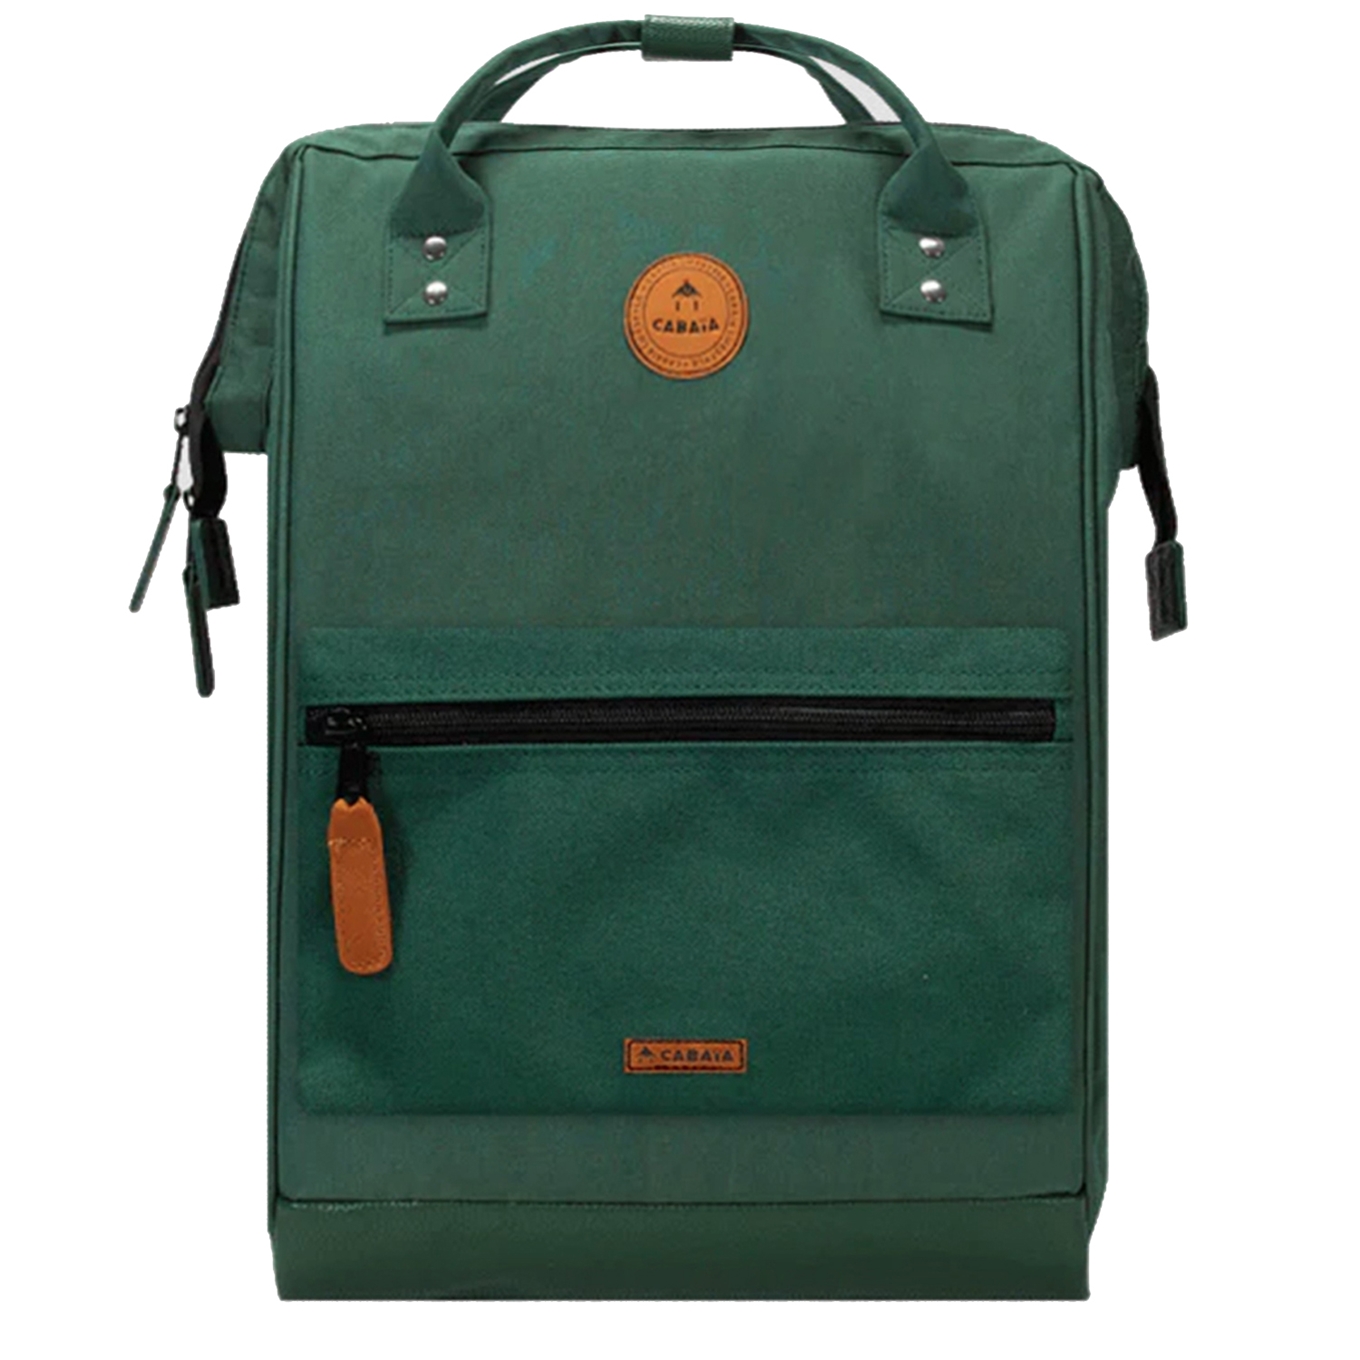 Cabaia Adventurer Large Bag montreal backpack